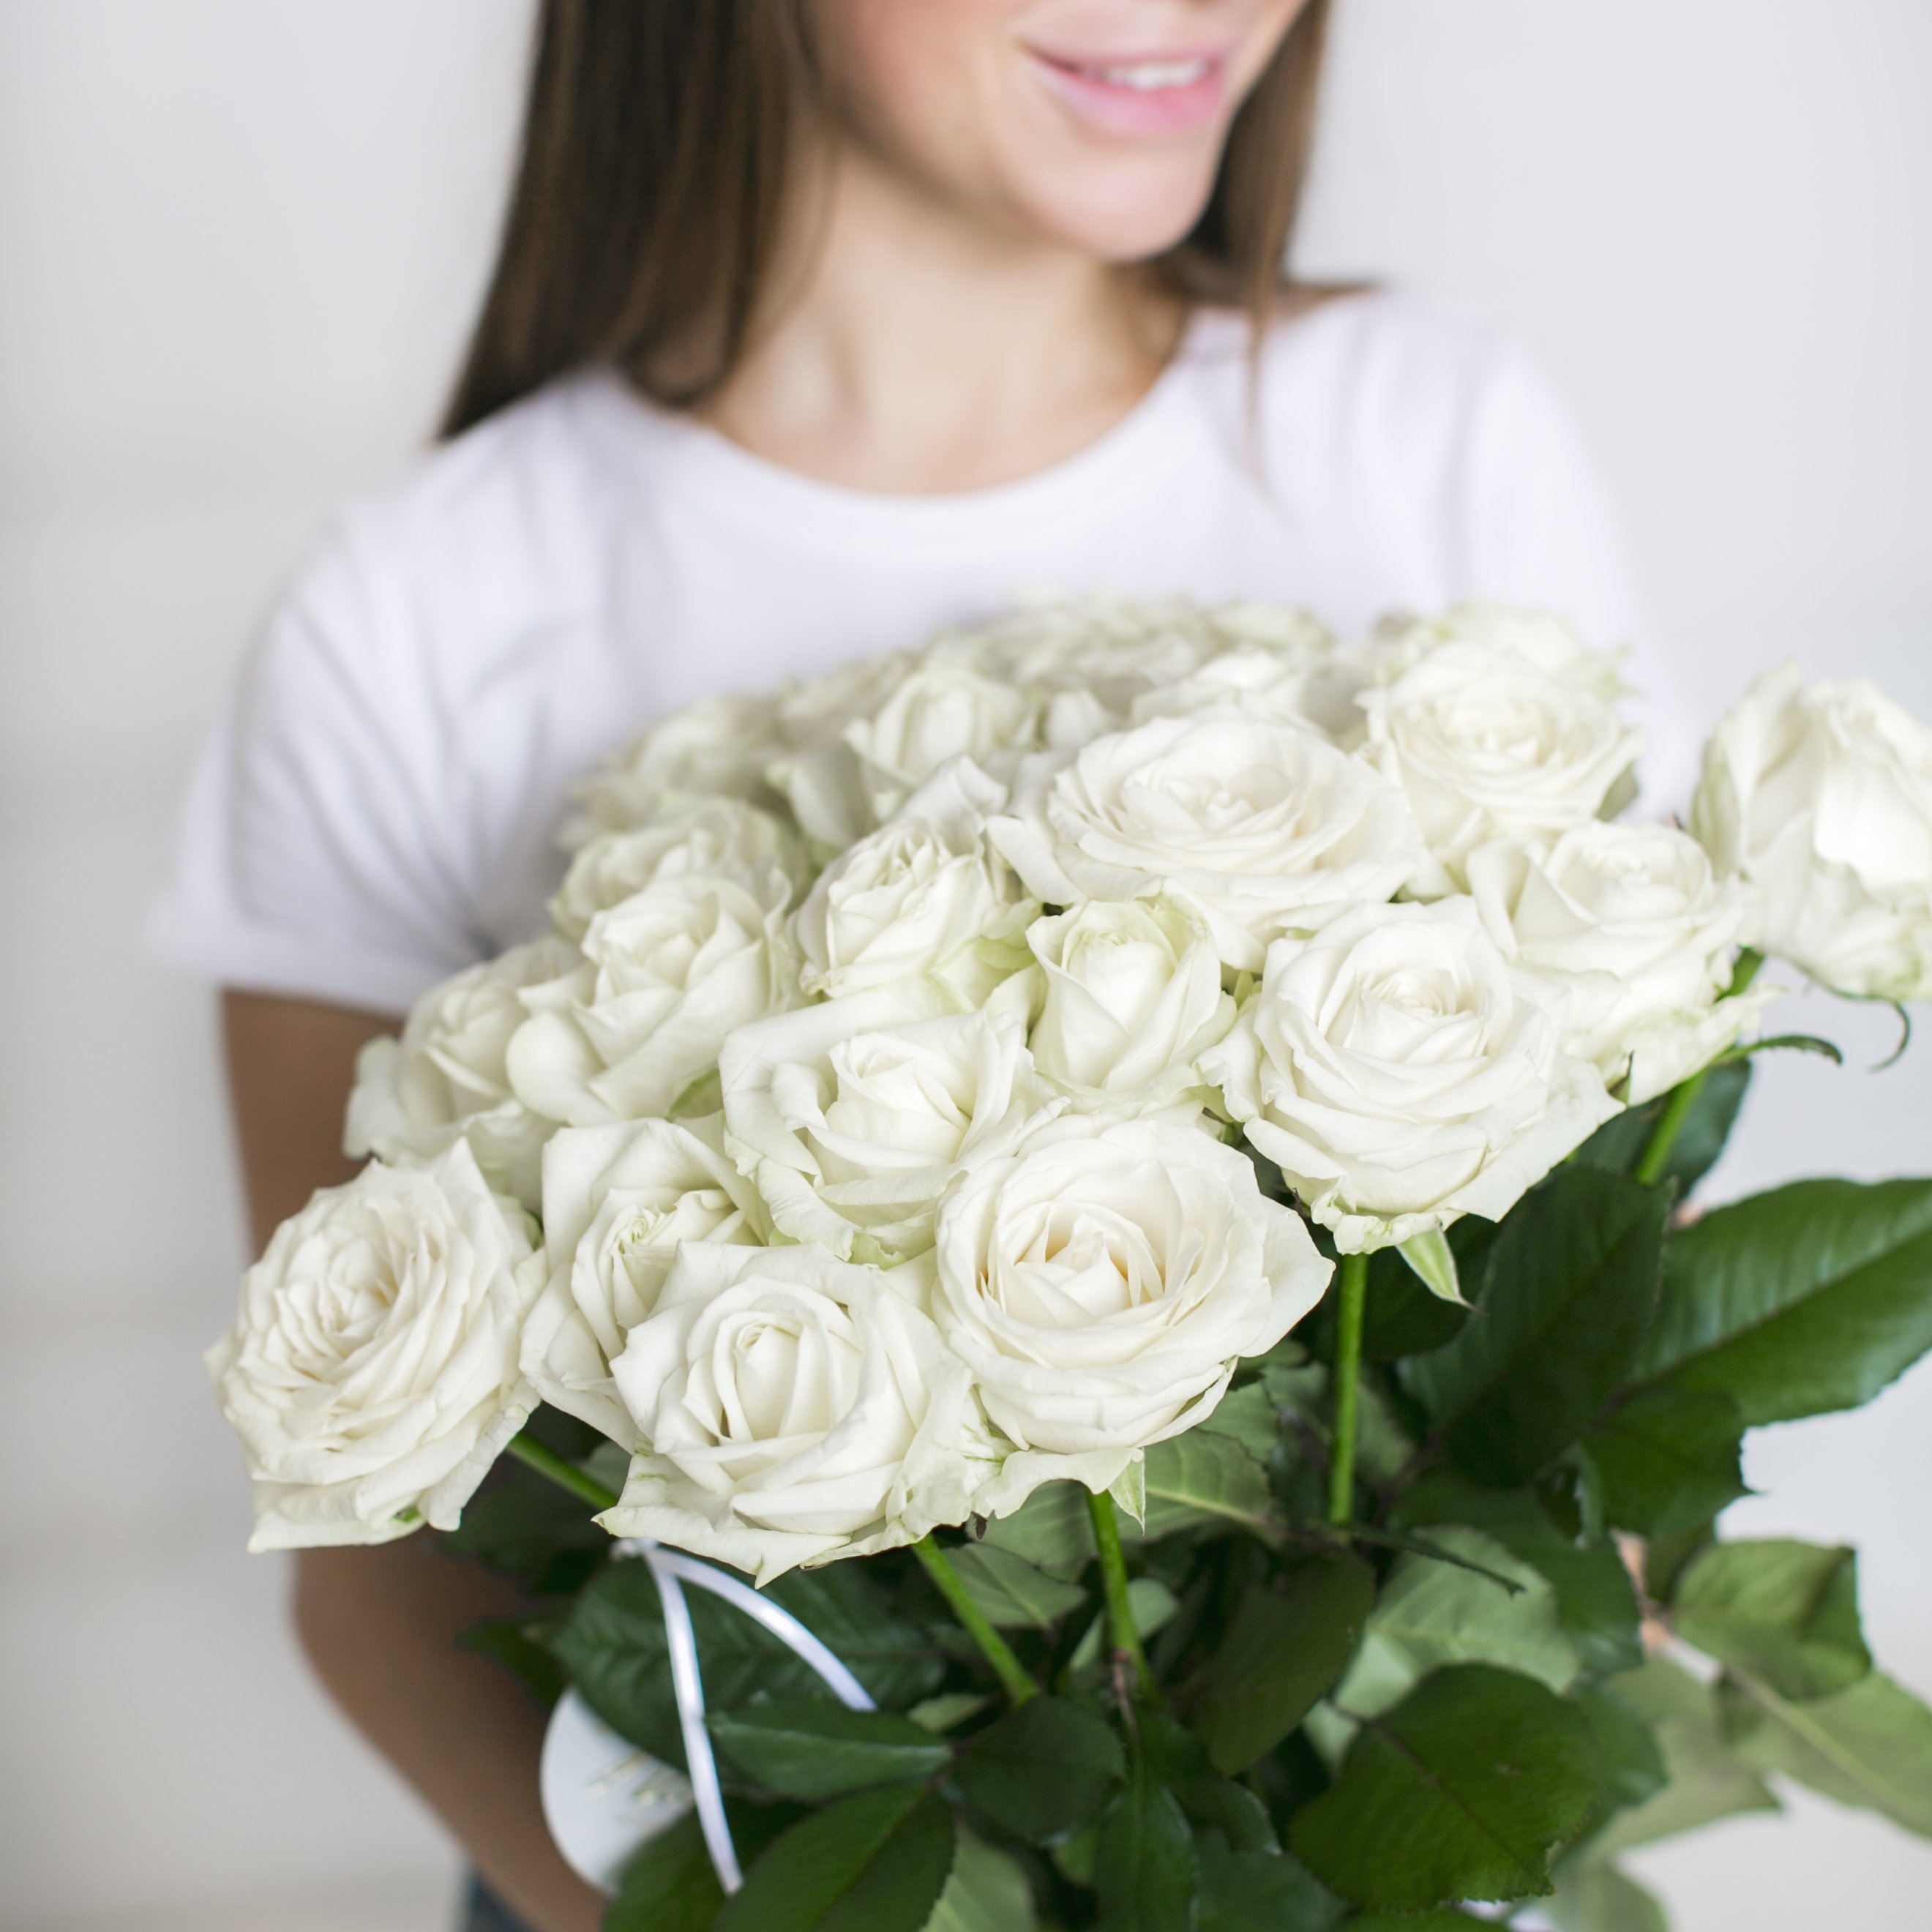 Белые розы в руках. Девушка с белыми розами. Женщина с букетом белых роз. Букет белых роз.